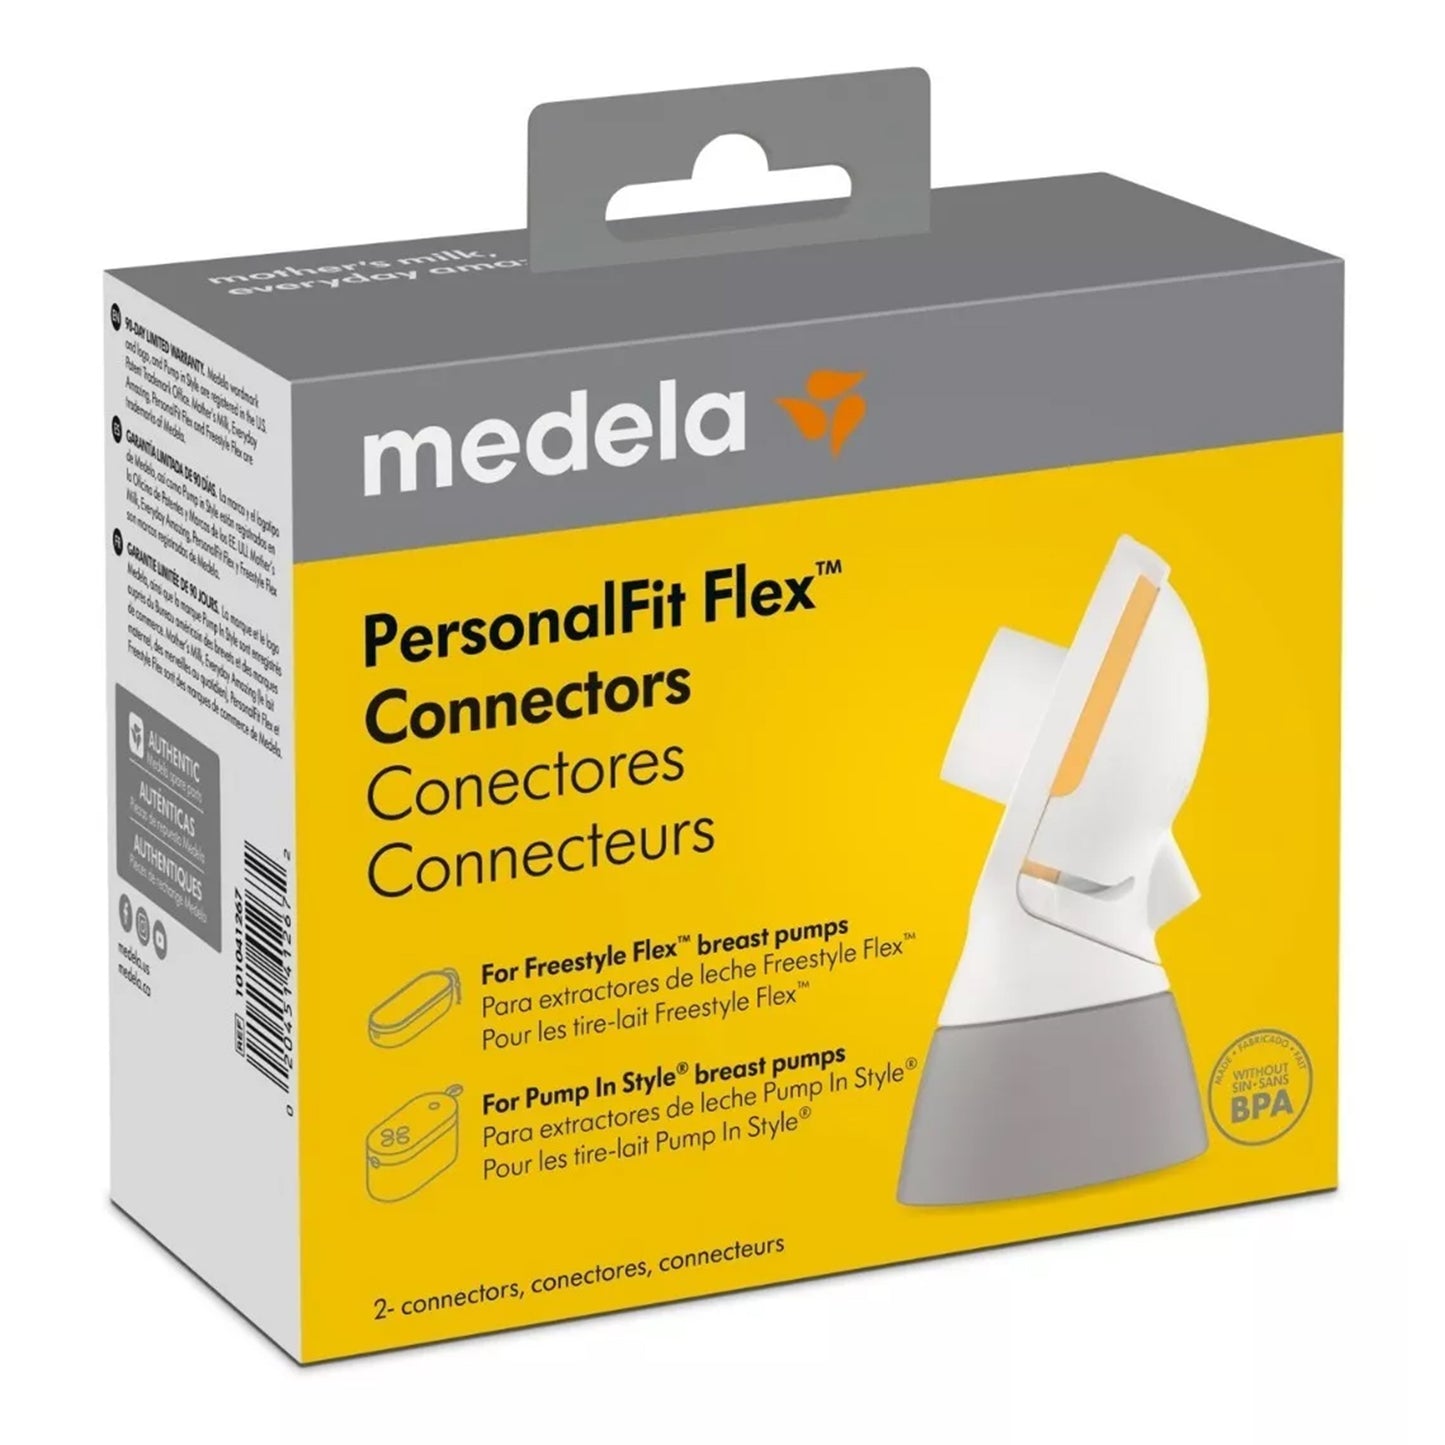 Conectores PersonalFit Flex™ para Pump In Style® con MaxFlow™ y Freestyle Flex™